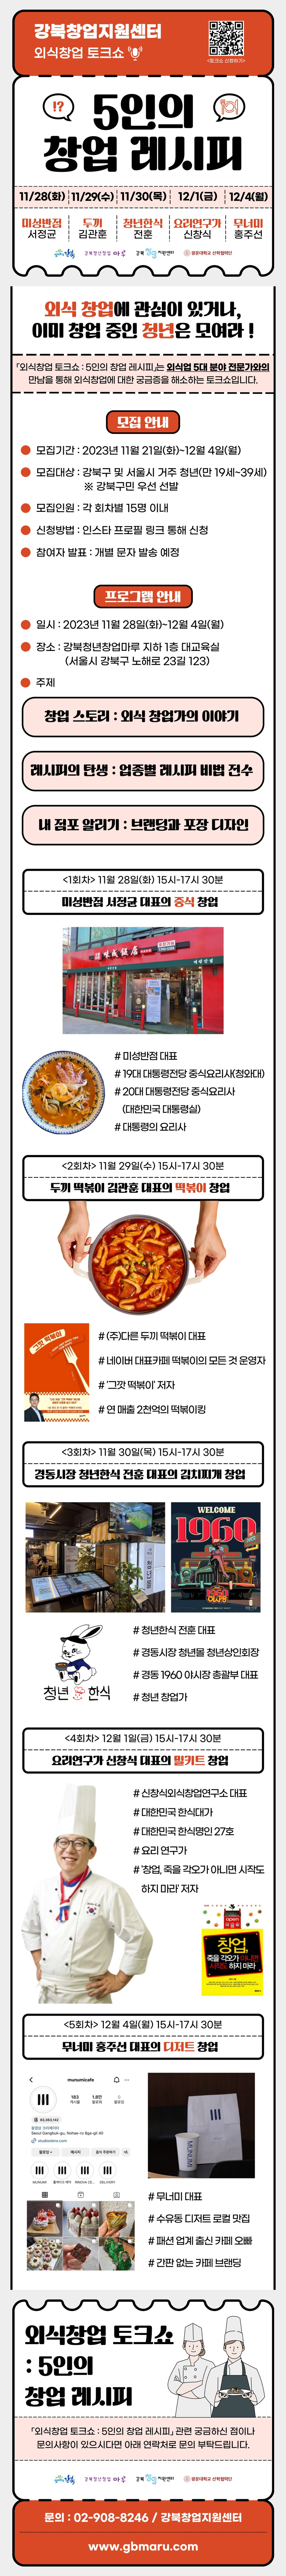 강북창업지원센터 「외식창업 토크쇼 : 5인의 창업 레시피」 참여자 모집